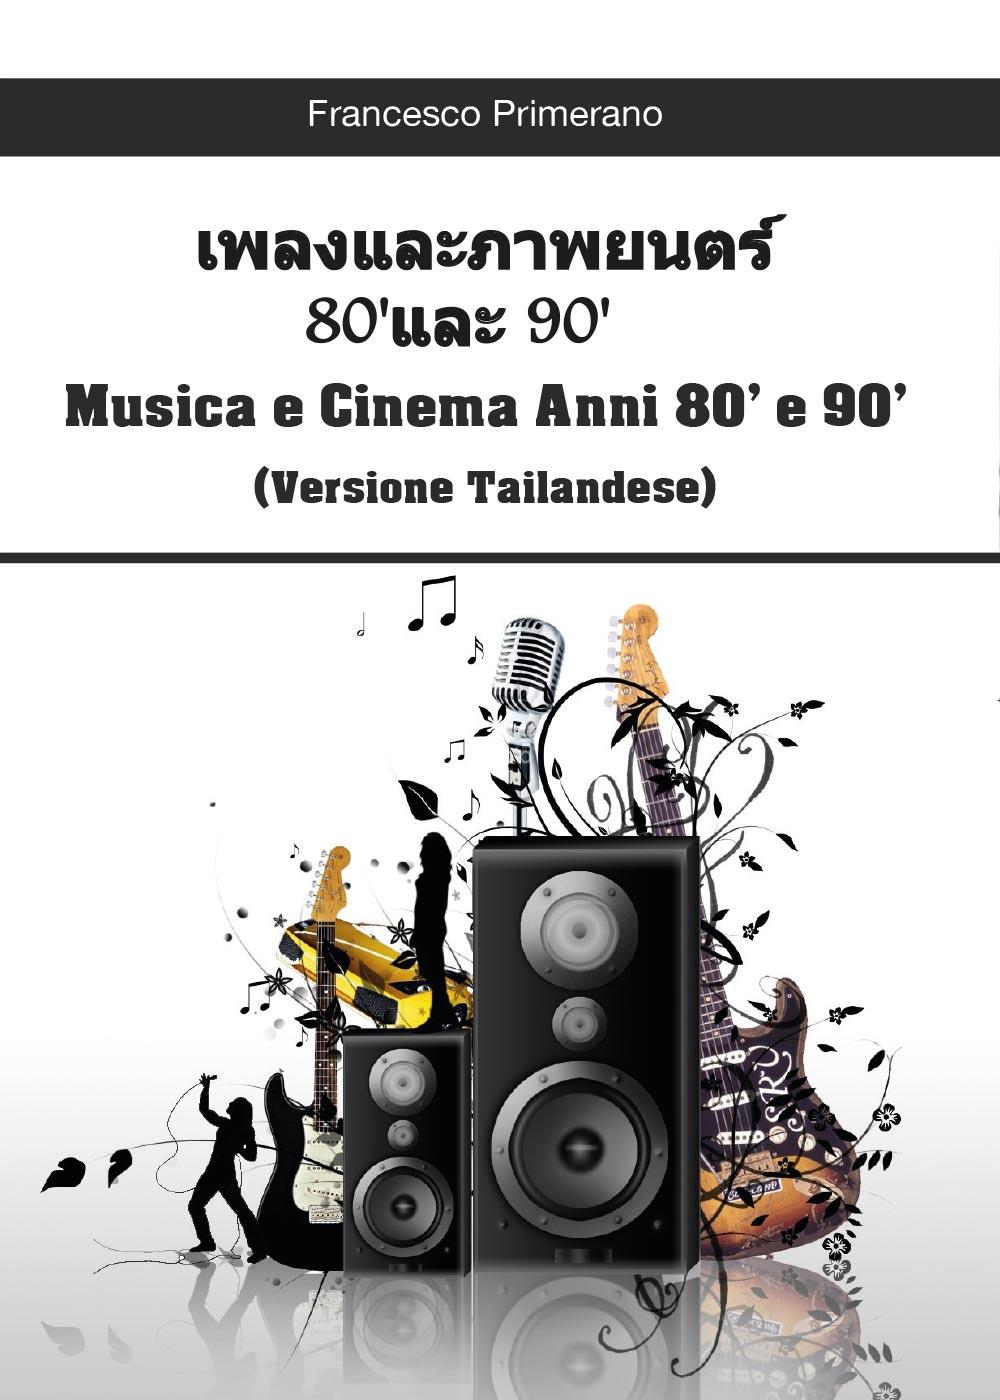 Musica e Cinema anni 80' e 90' (versione tailandese)